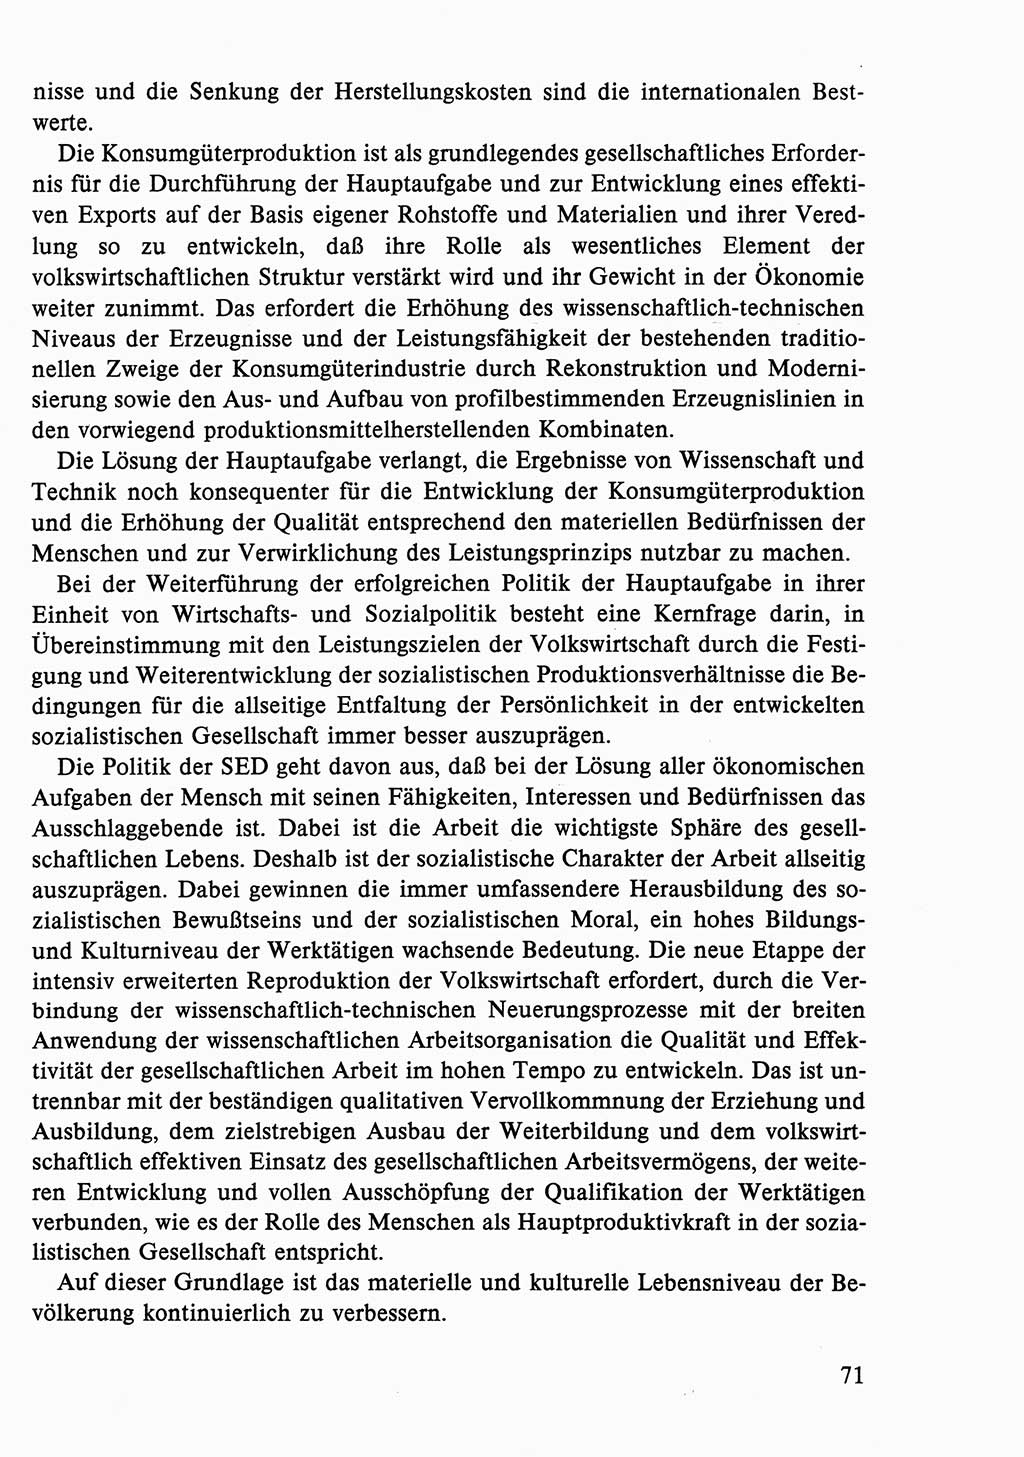 Dokumente der Sozialistischen Einheitspartei Deutschlands (SED) [Deutsche Demokratische Republik (DDR)] 1986-1987, Seite 71 (Dok. SED DDR 1986-1987, S. 71)